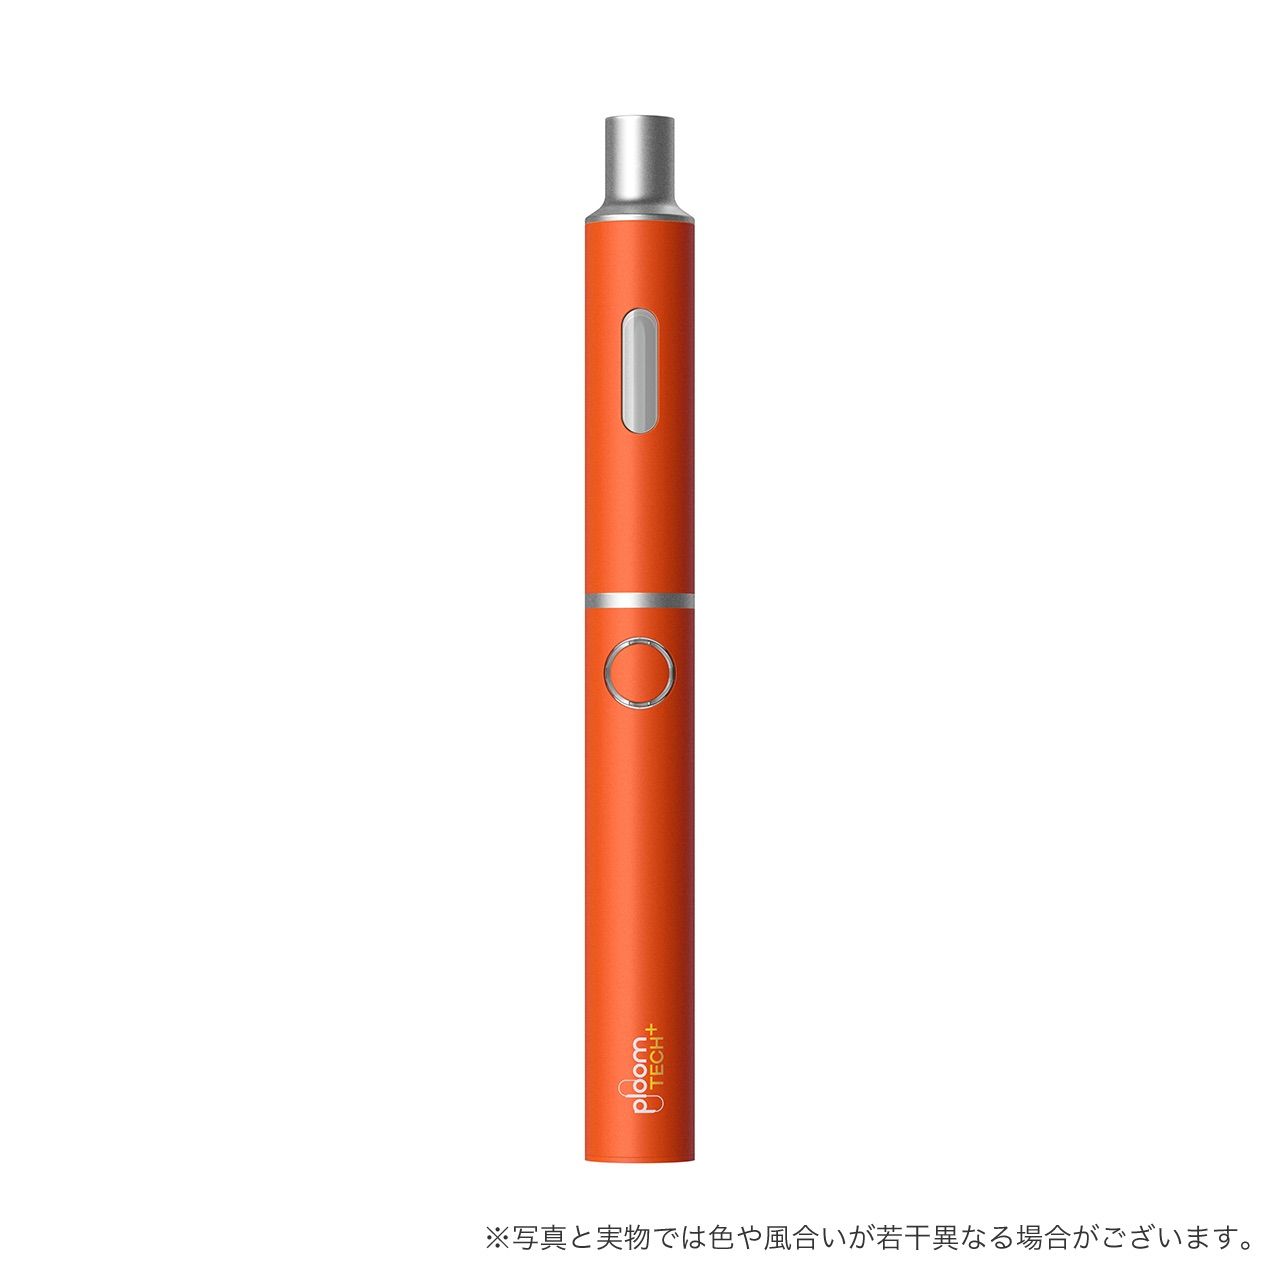 新型ランプオレンジ 】プルームテックプラス1.5 スターターキット 